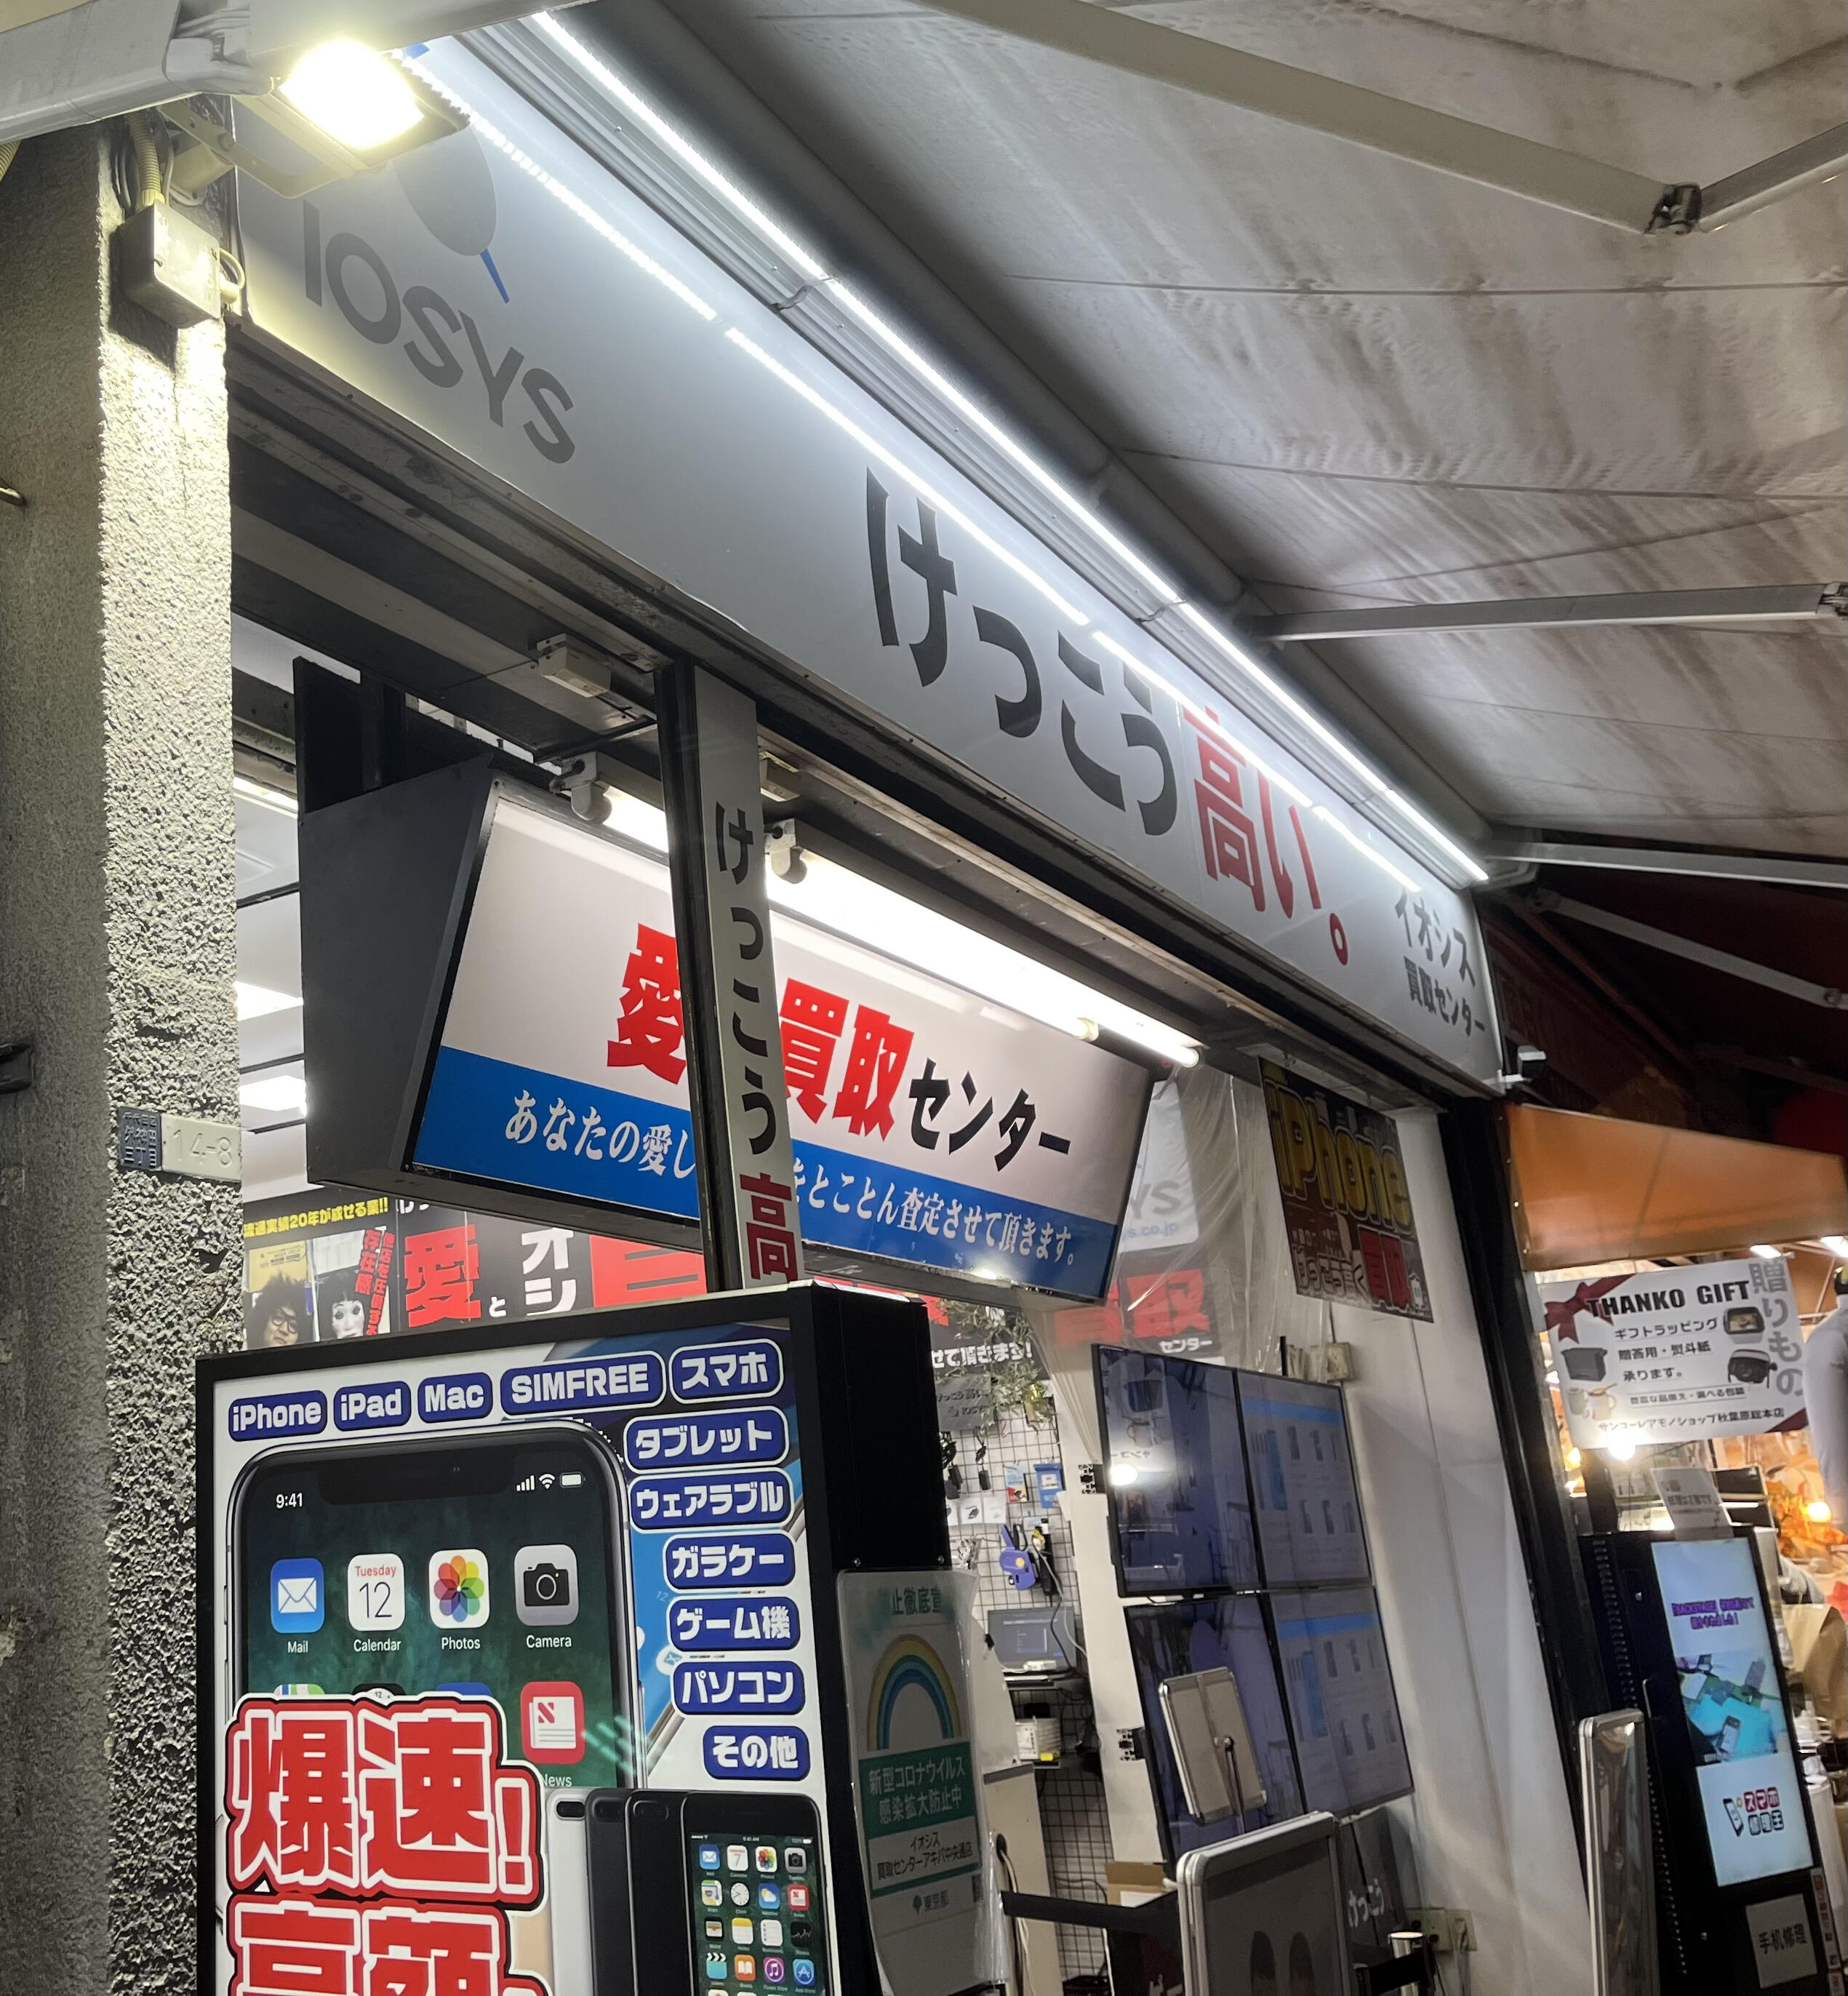 イオシス 買取センター - 千代田区外神田/中古パソコン店 | Yahoo 